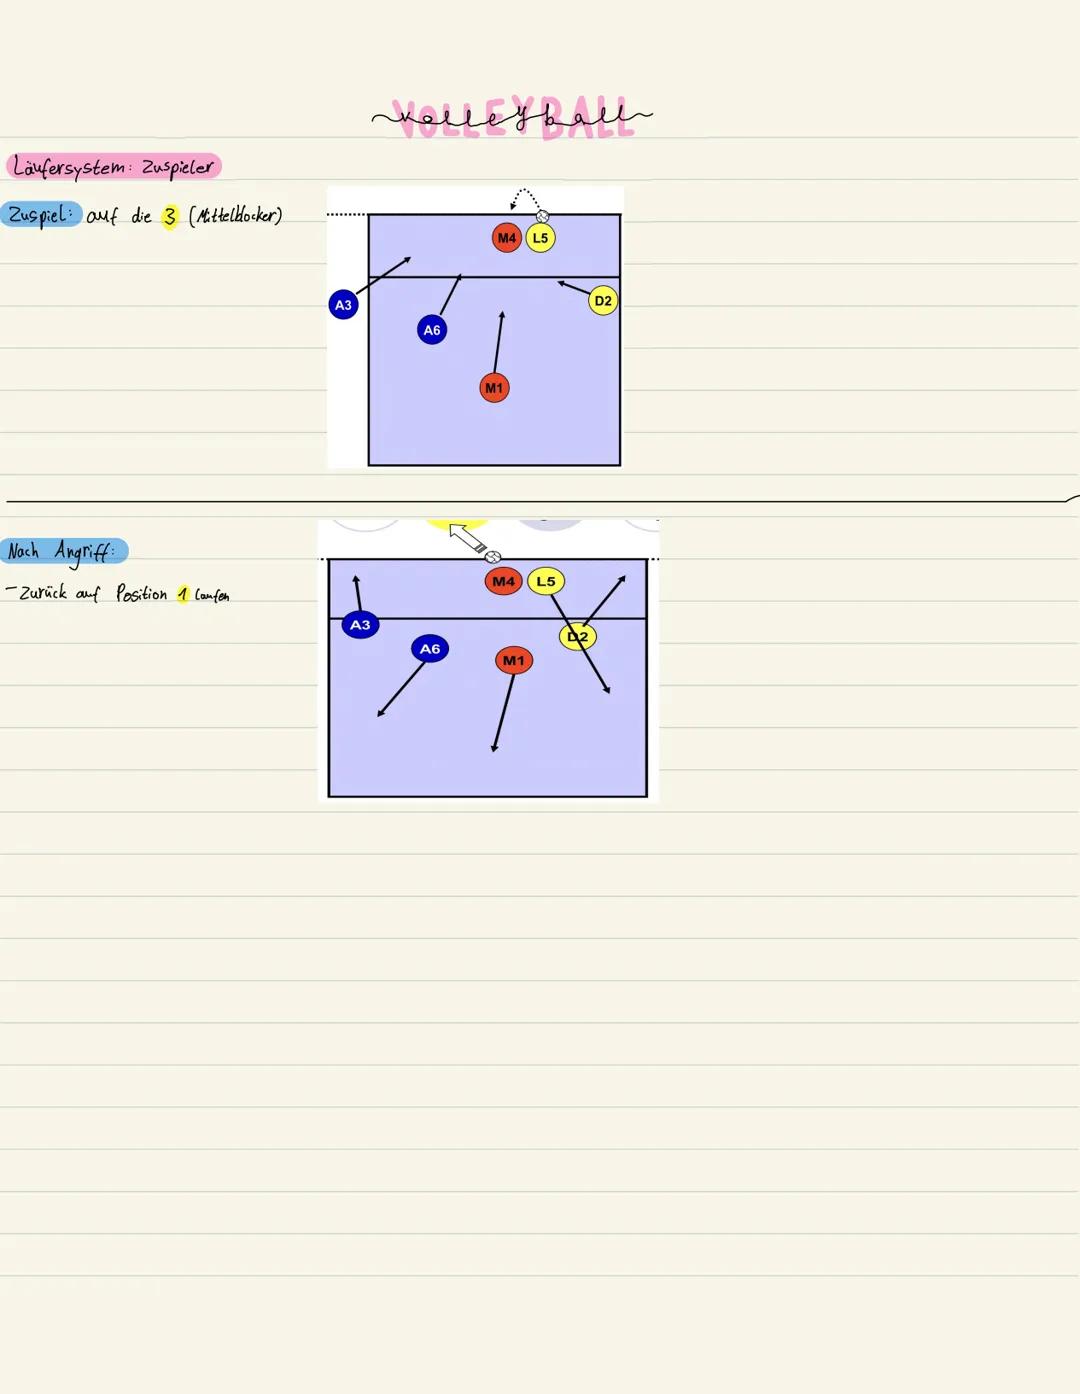 Läufersystem: Zuspieler
Position 1: 1. Variante / Aufschlagball
Bei Aufstellung des Geghers : Rechts kurz vor 3m Linie
-hinter Pos. 2 stehen